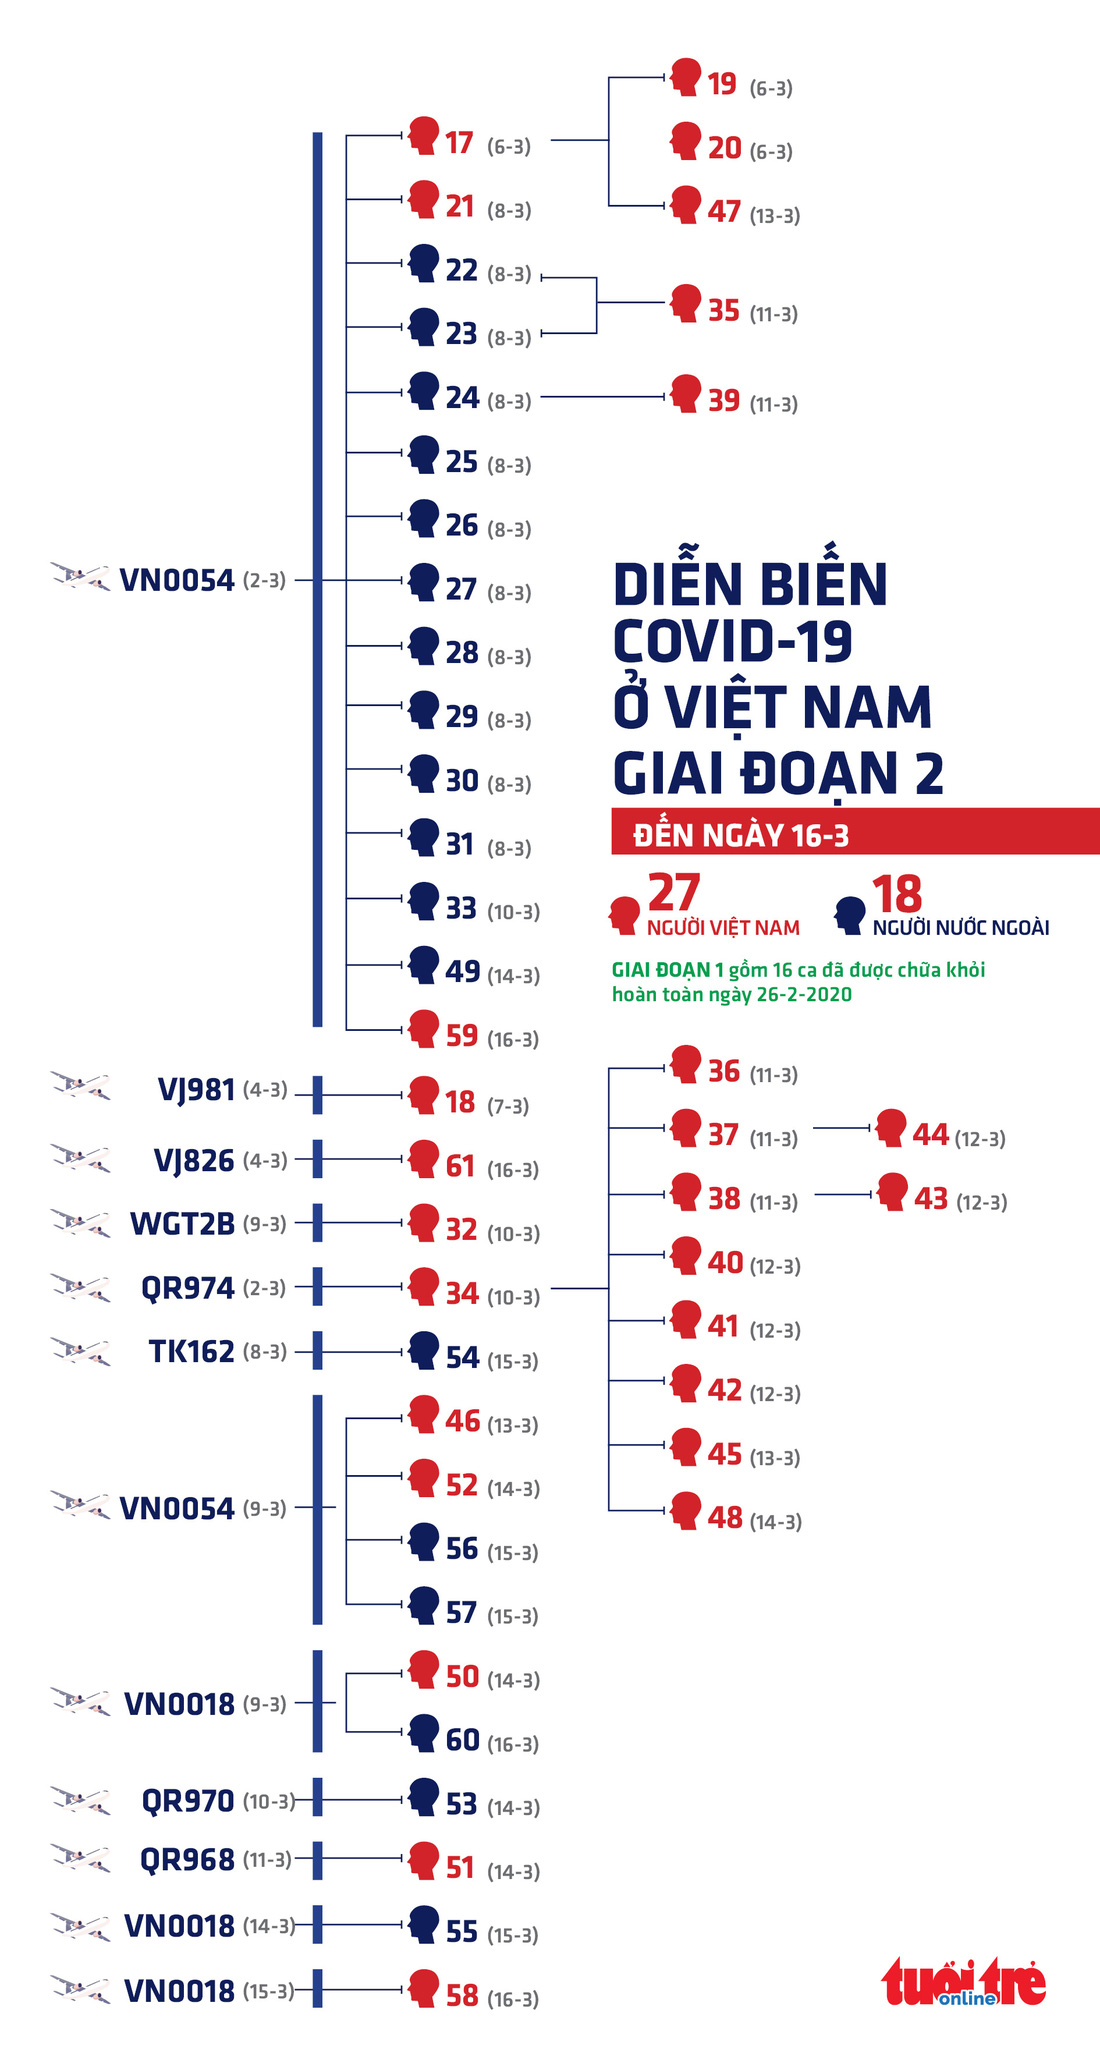 Sơ đồ lây của các ca COVID-19 ở Việt Nam kể từ bệnh nhân 17 - Ảnh 1.